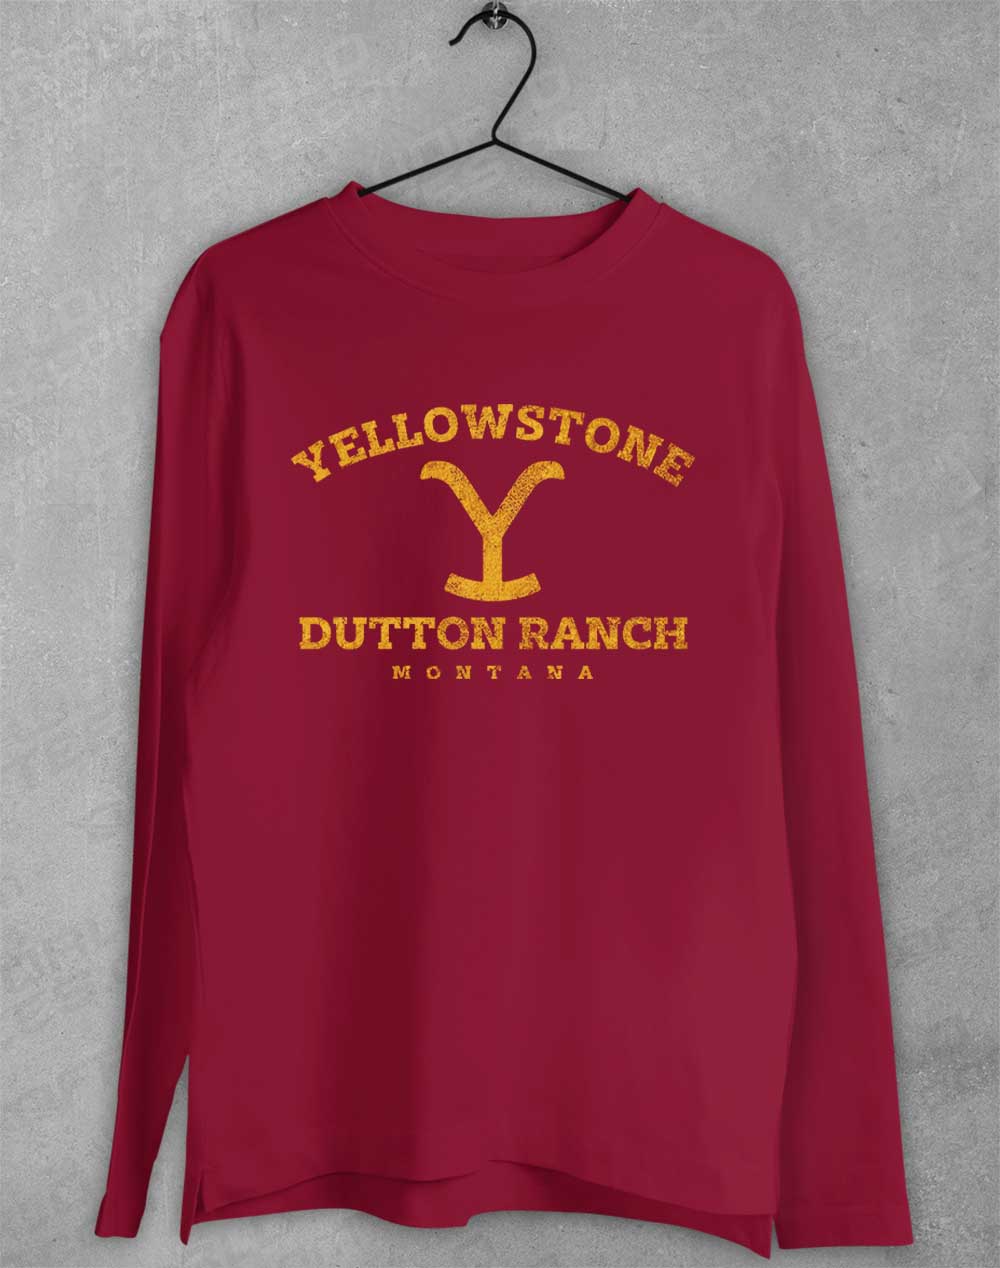 Cardinal Red - Dutton Ranch Montana Long Sleeve T-Shirt